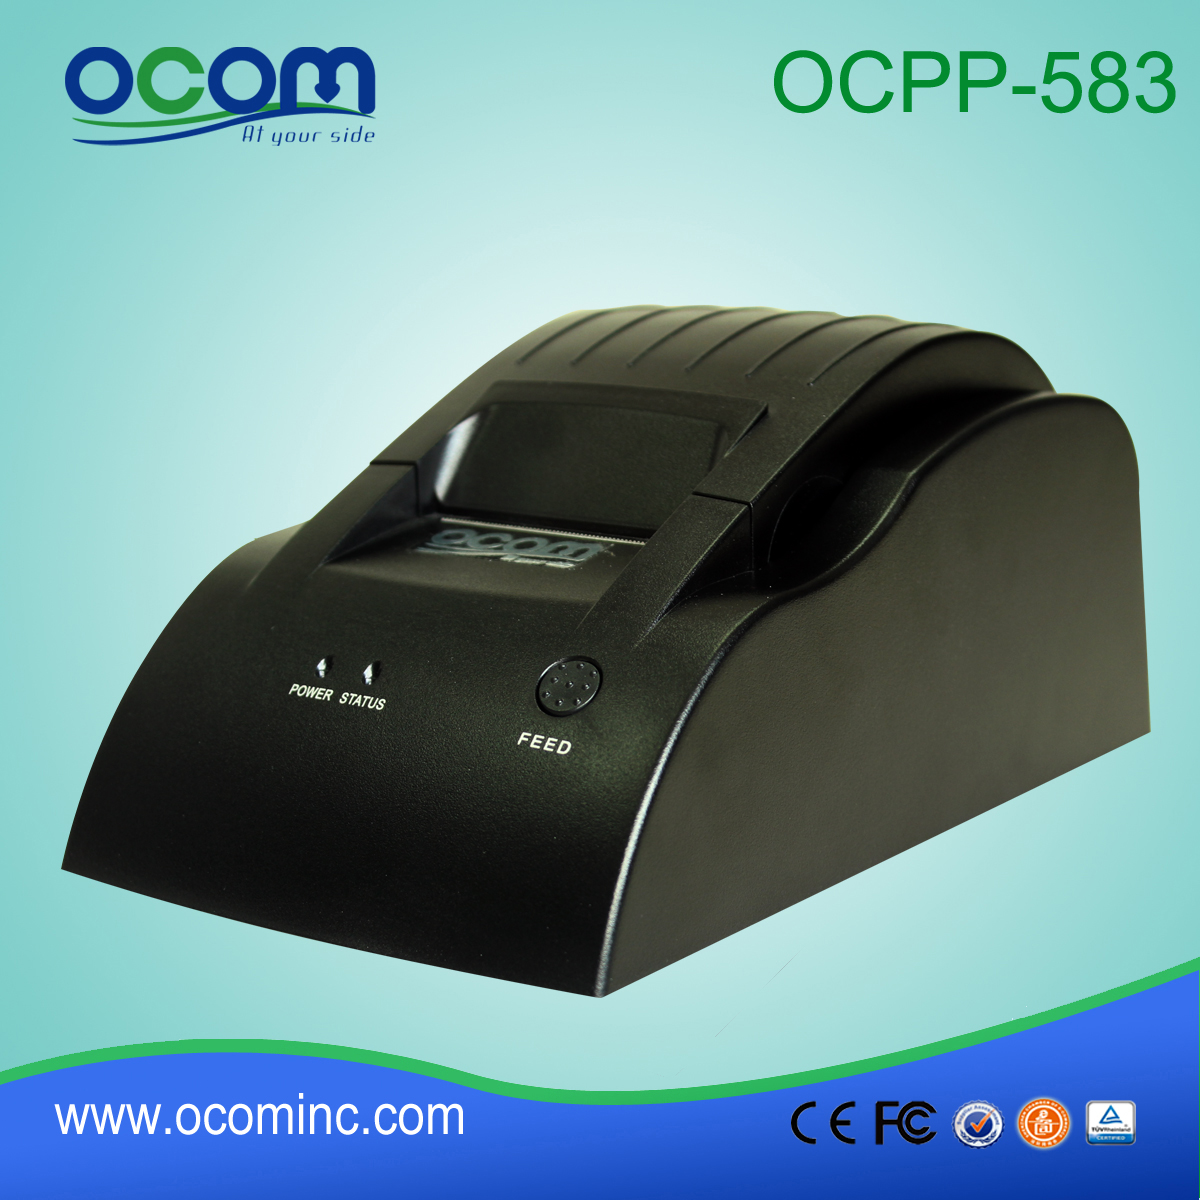 OCPP-583: 2015 موثوق 58mm وإمدادات الطابعة استلام الحرارية، الطابعة نقاط البيع